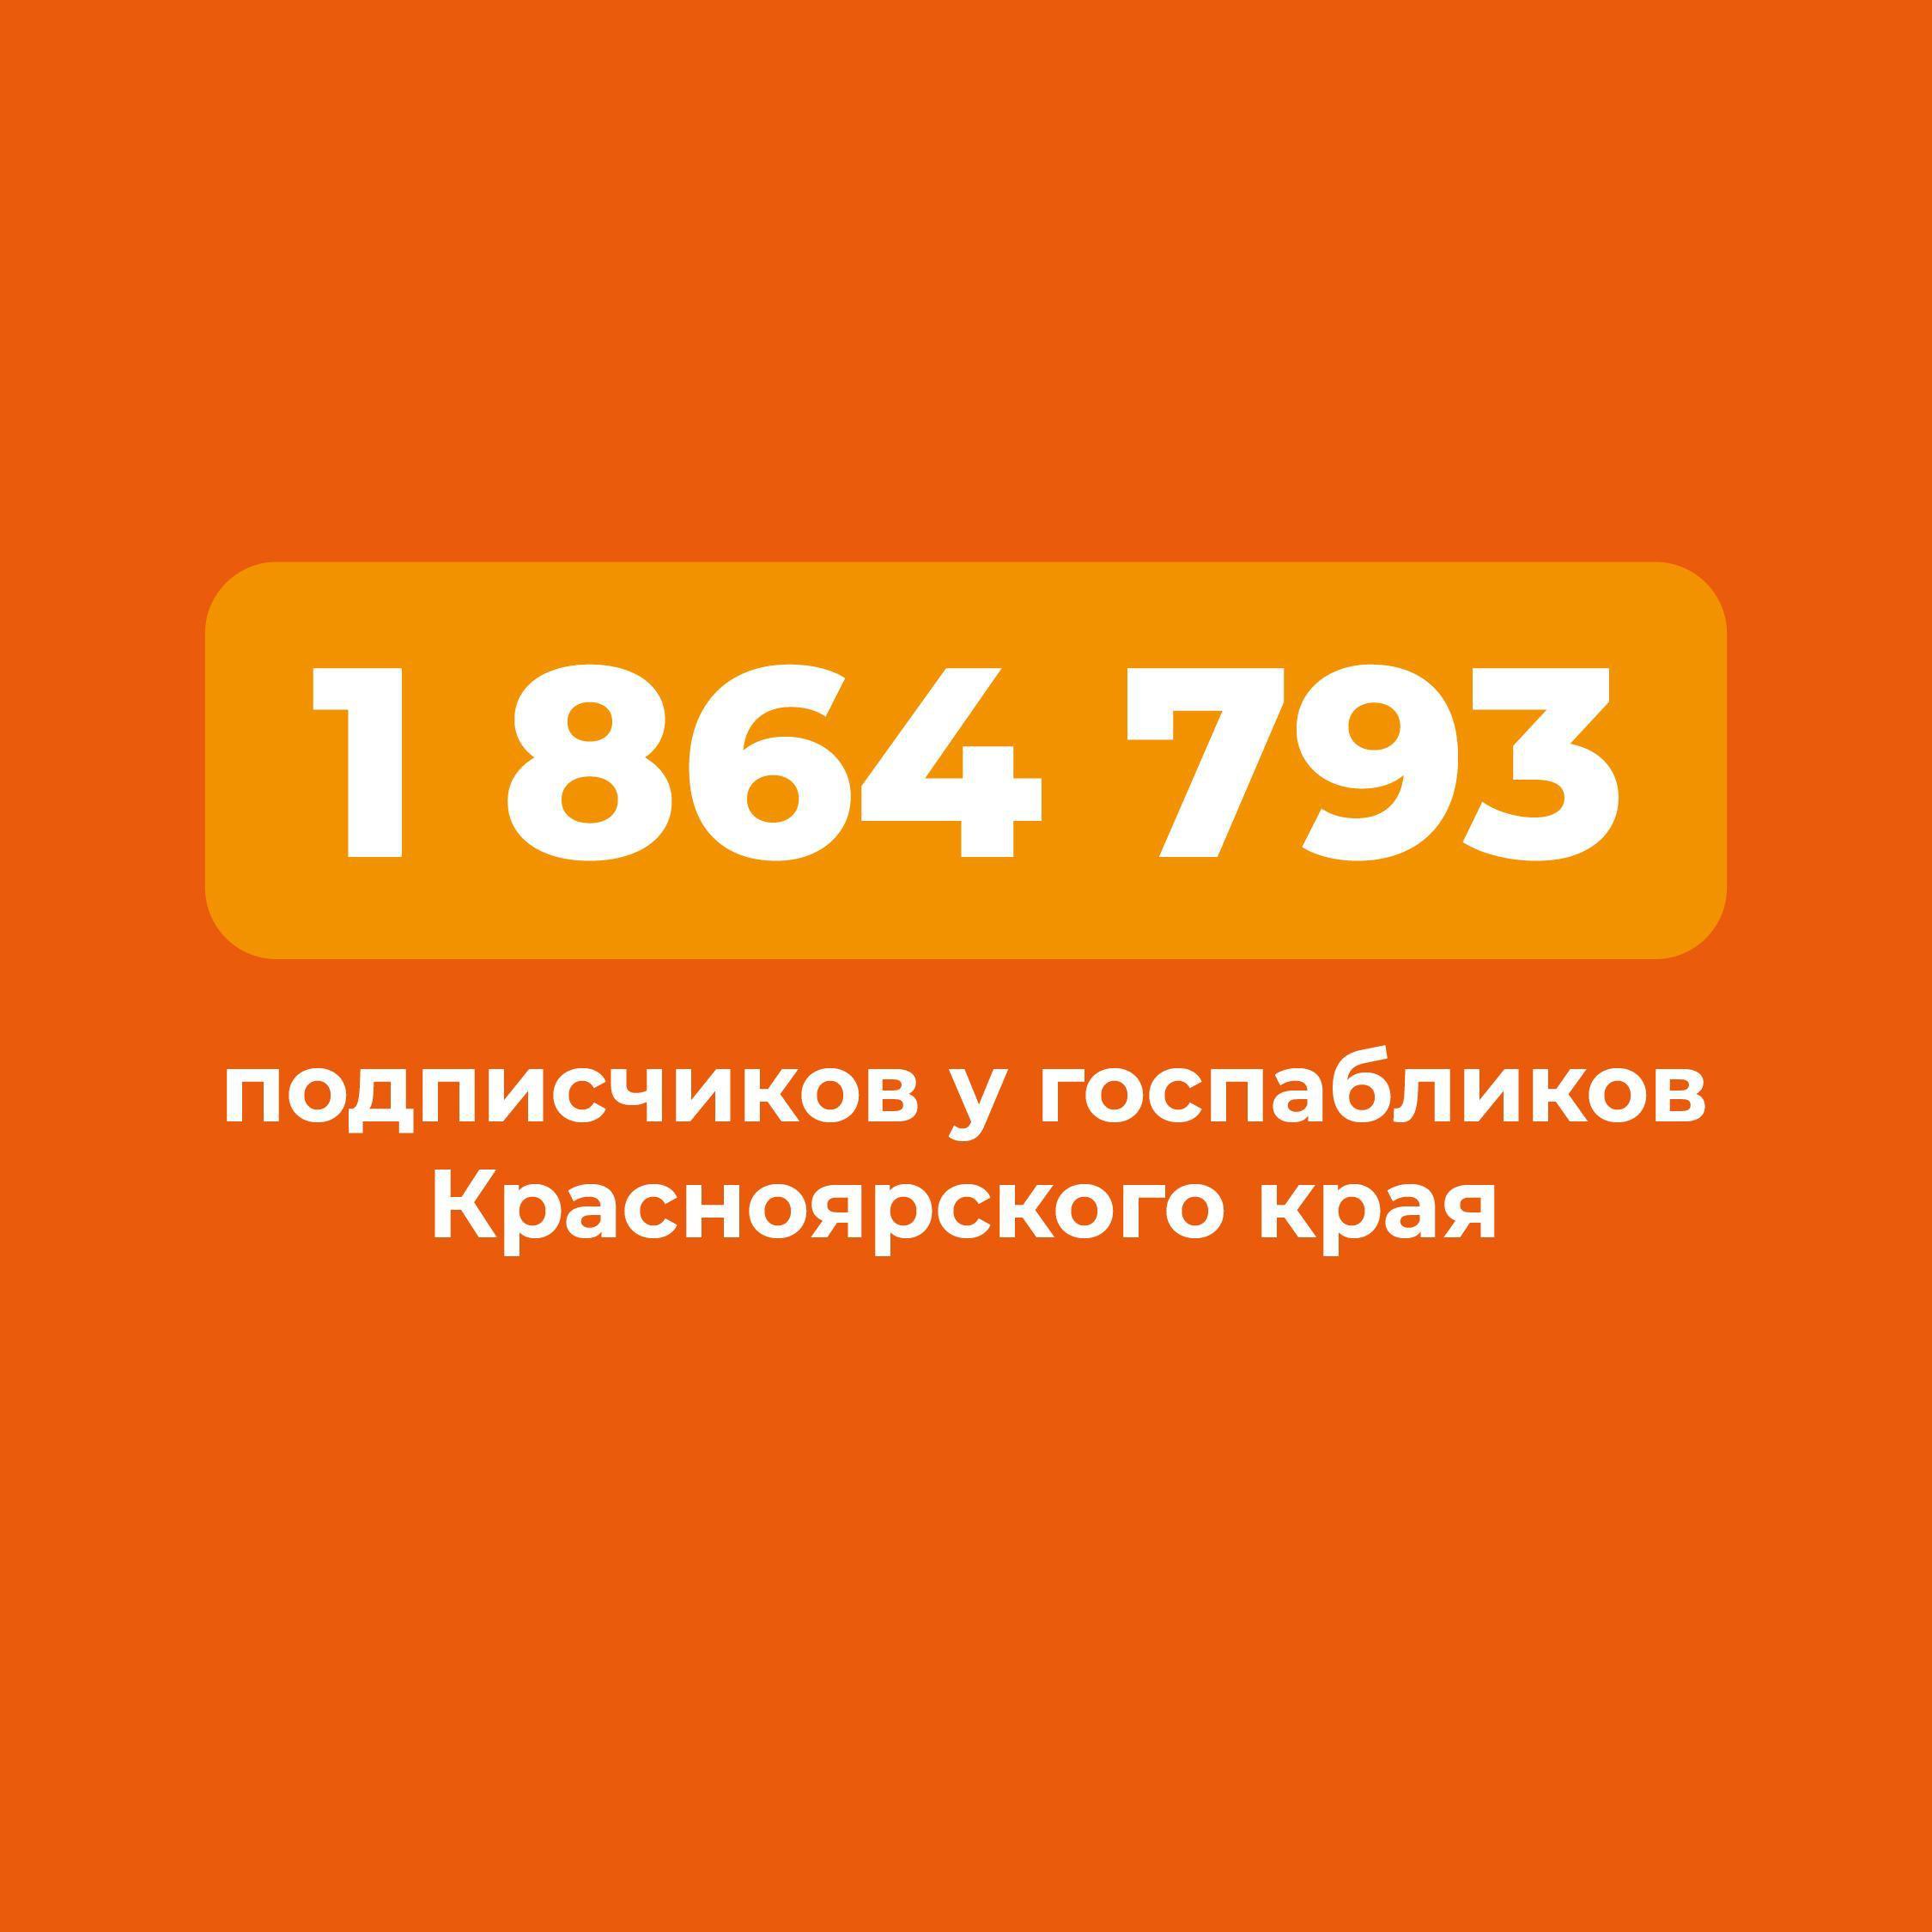 Получать достоверную информацию жители Красноярского края могут через госпаблики